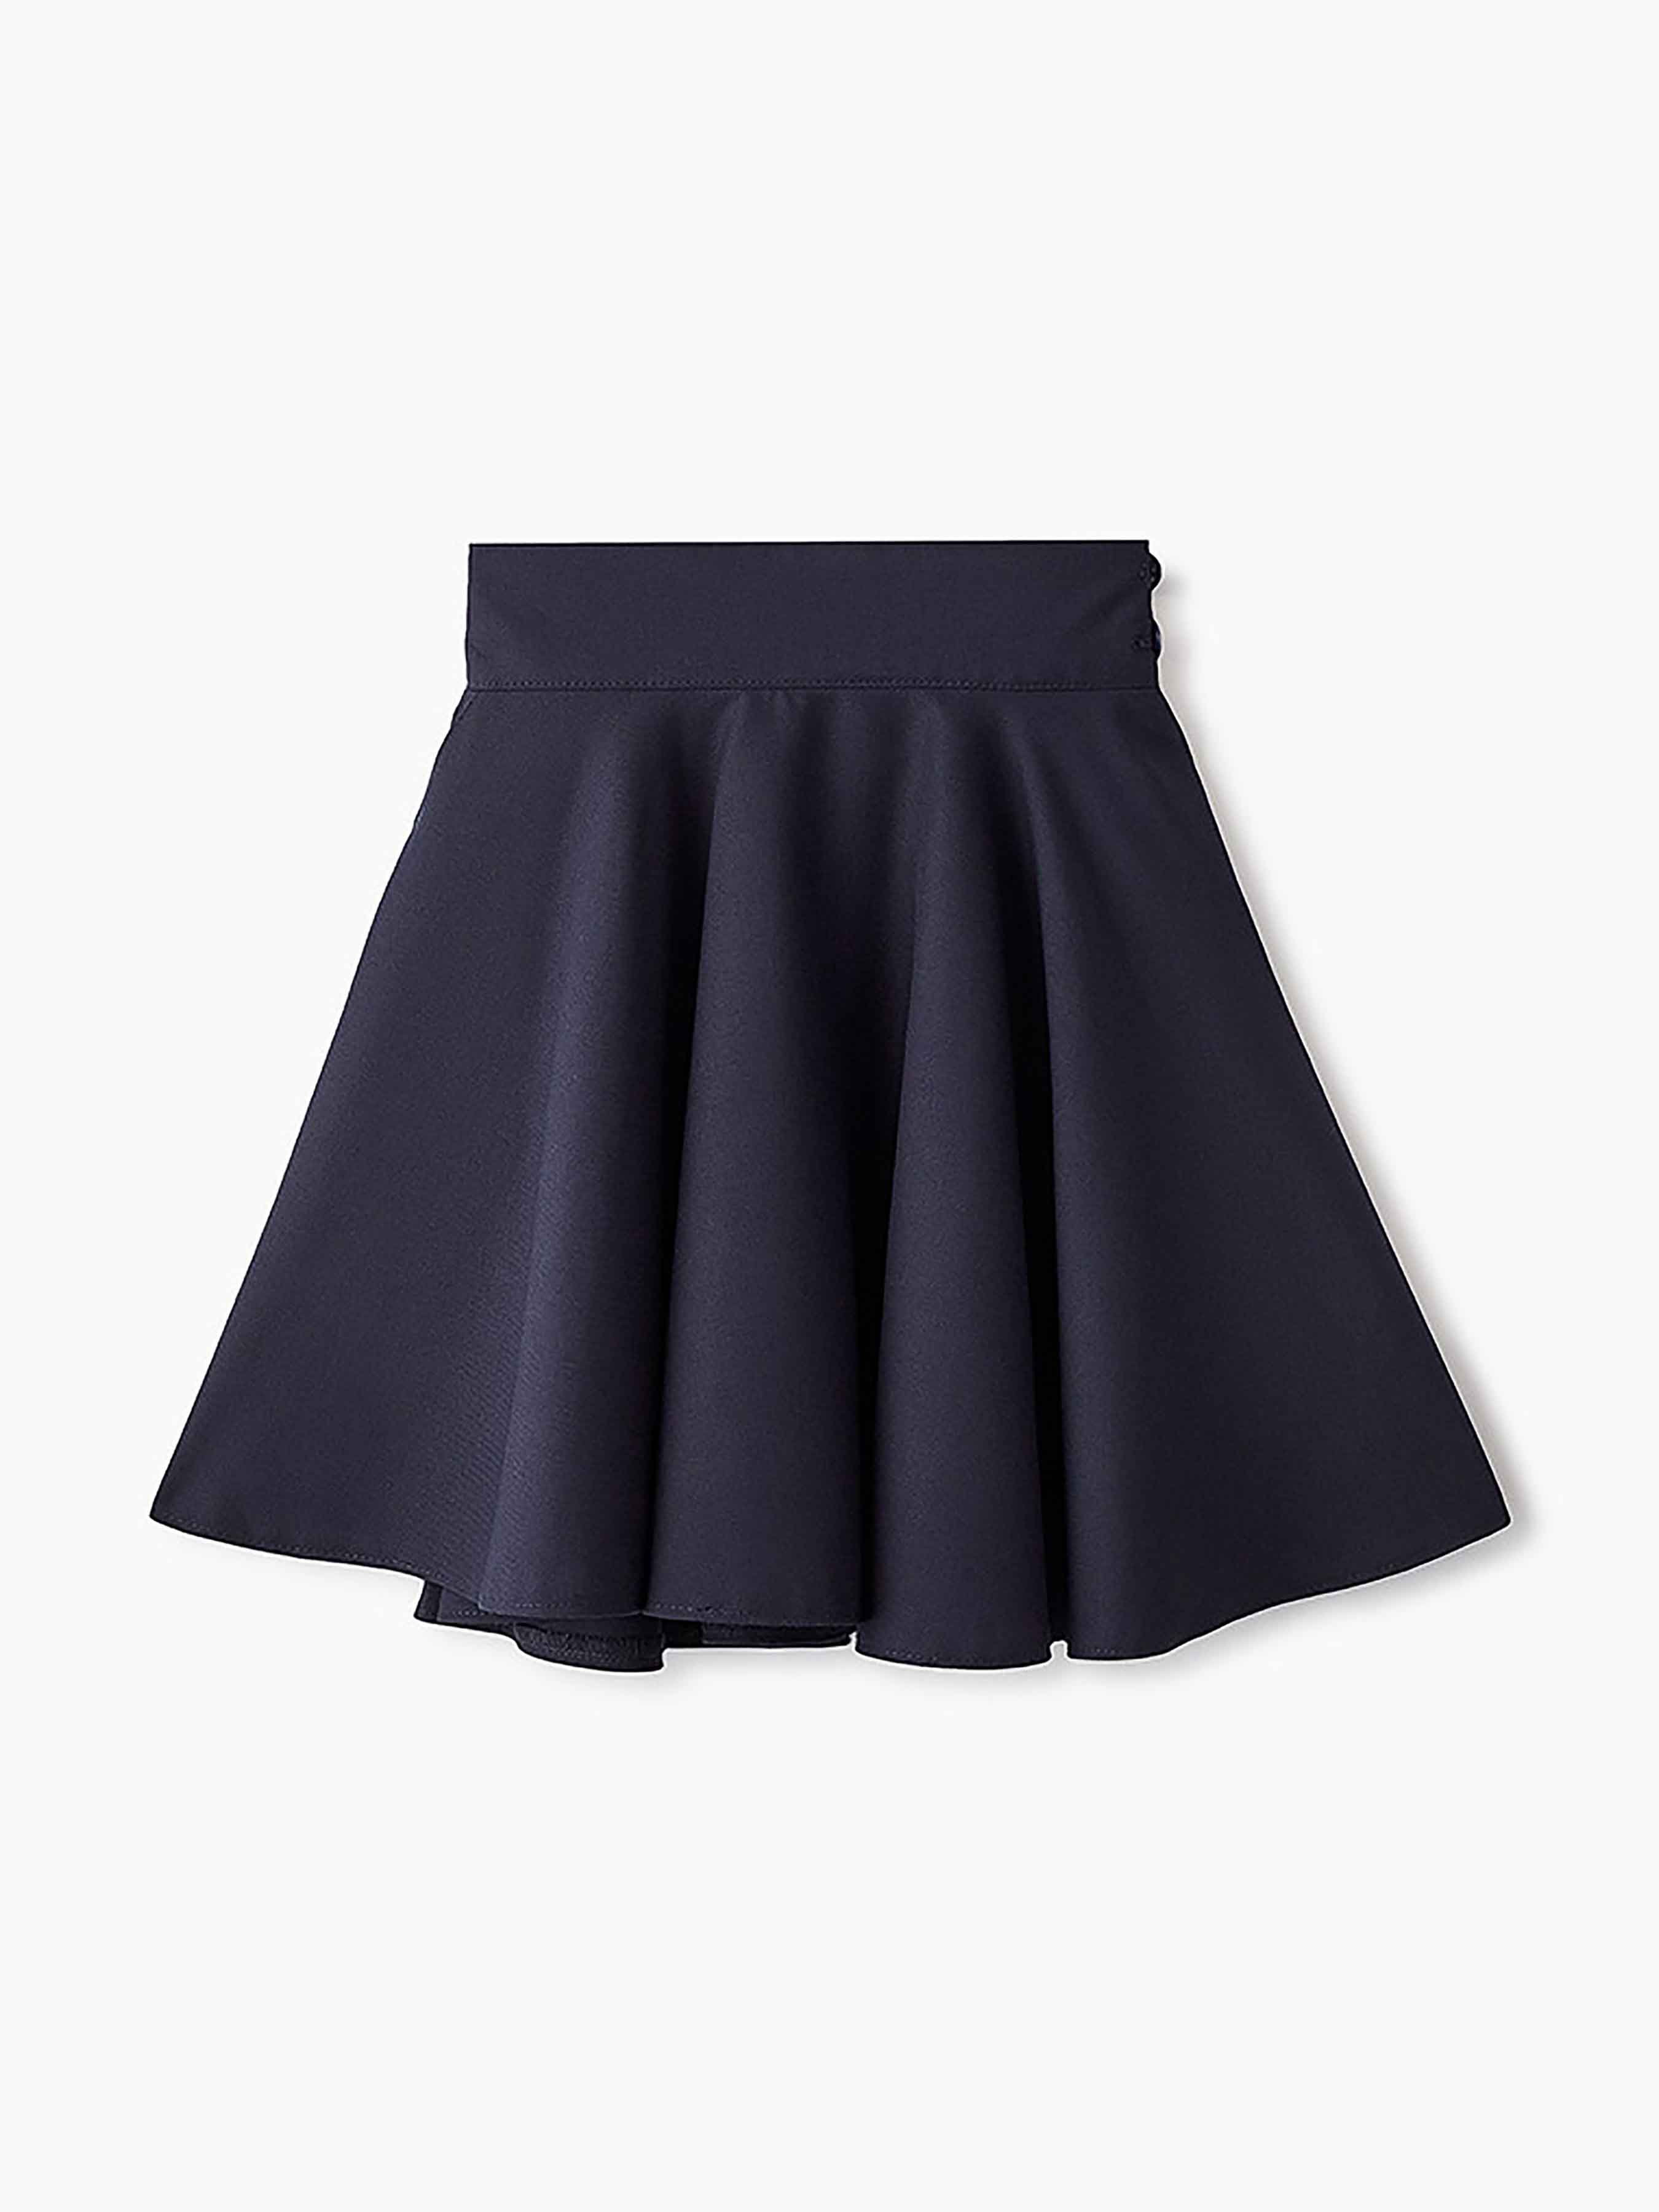 Школьная юбка для девочки синяя 12846